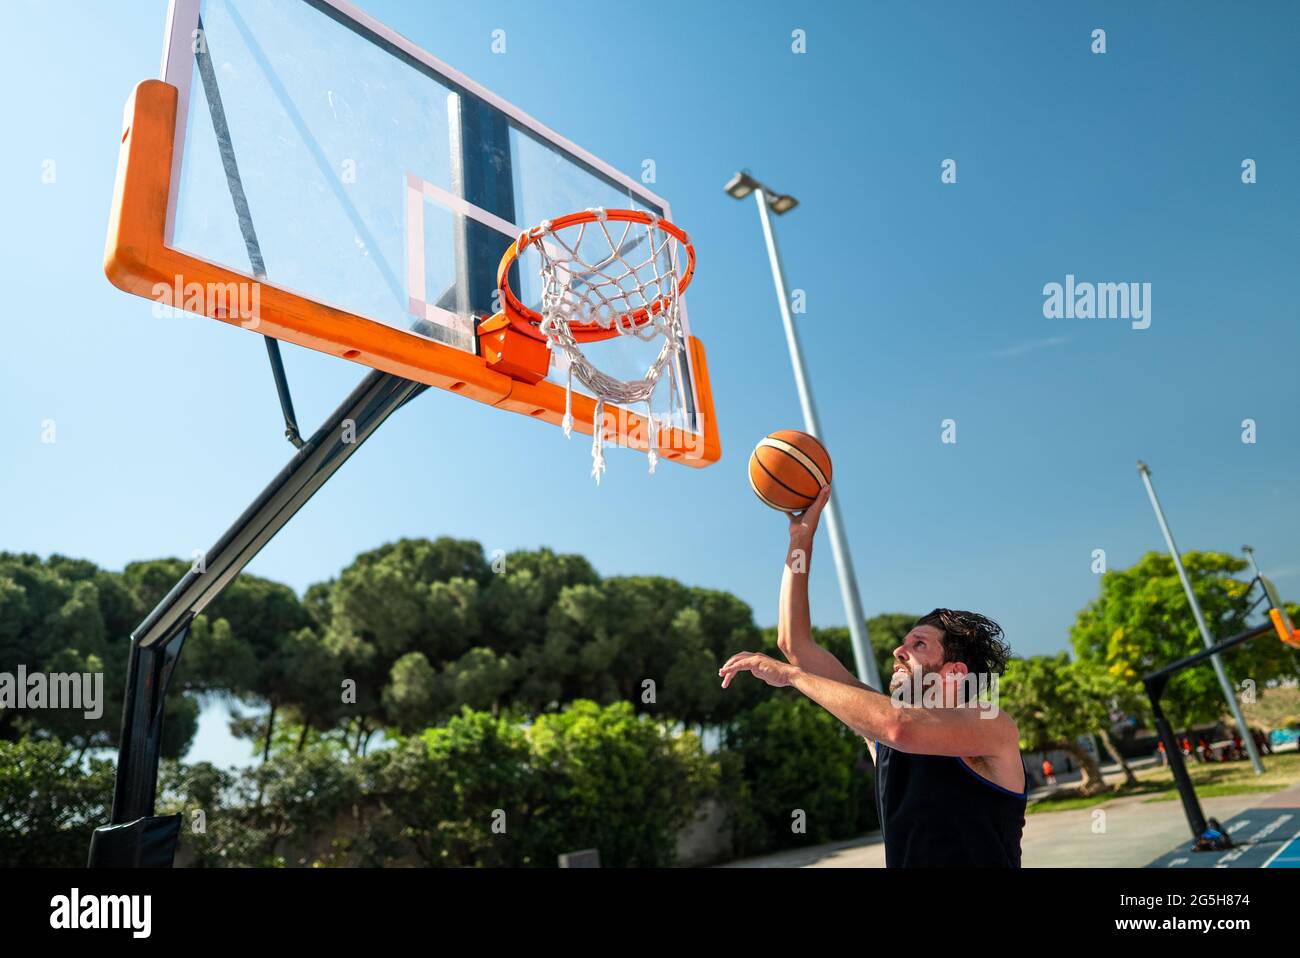 Un sportif masculin jouant au basket-ball lance le ballon sur le terrain de jeu, faisant avec succès la vue de dunk de derrière. Prise de vue de précision Banque D'Images